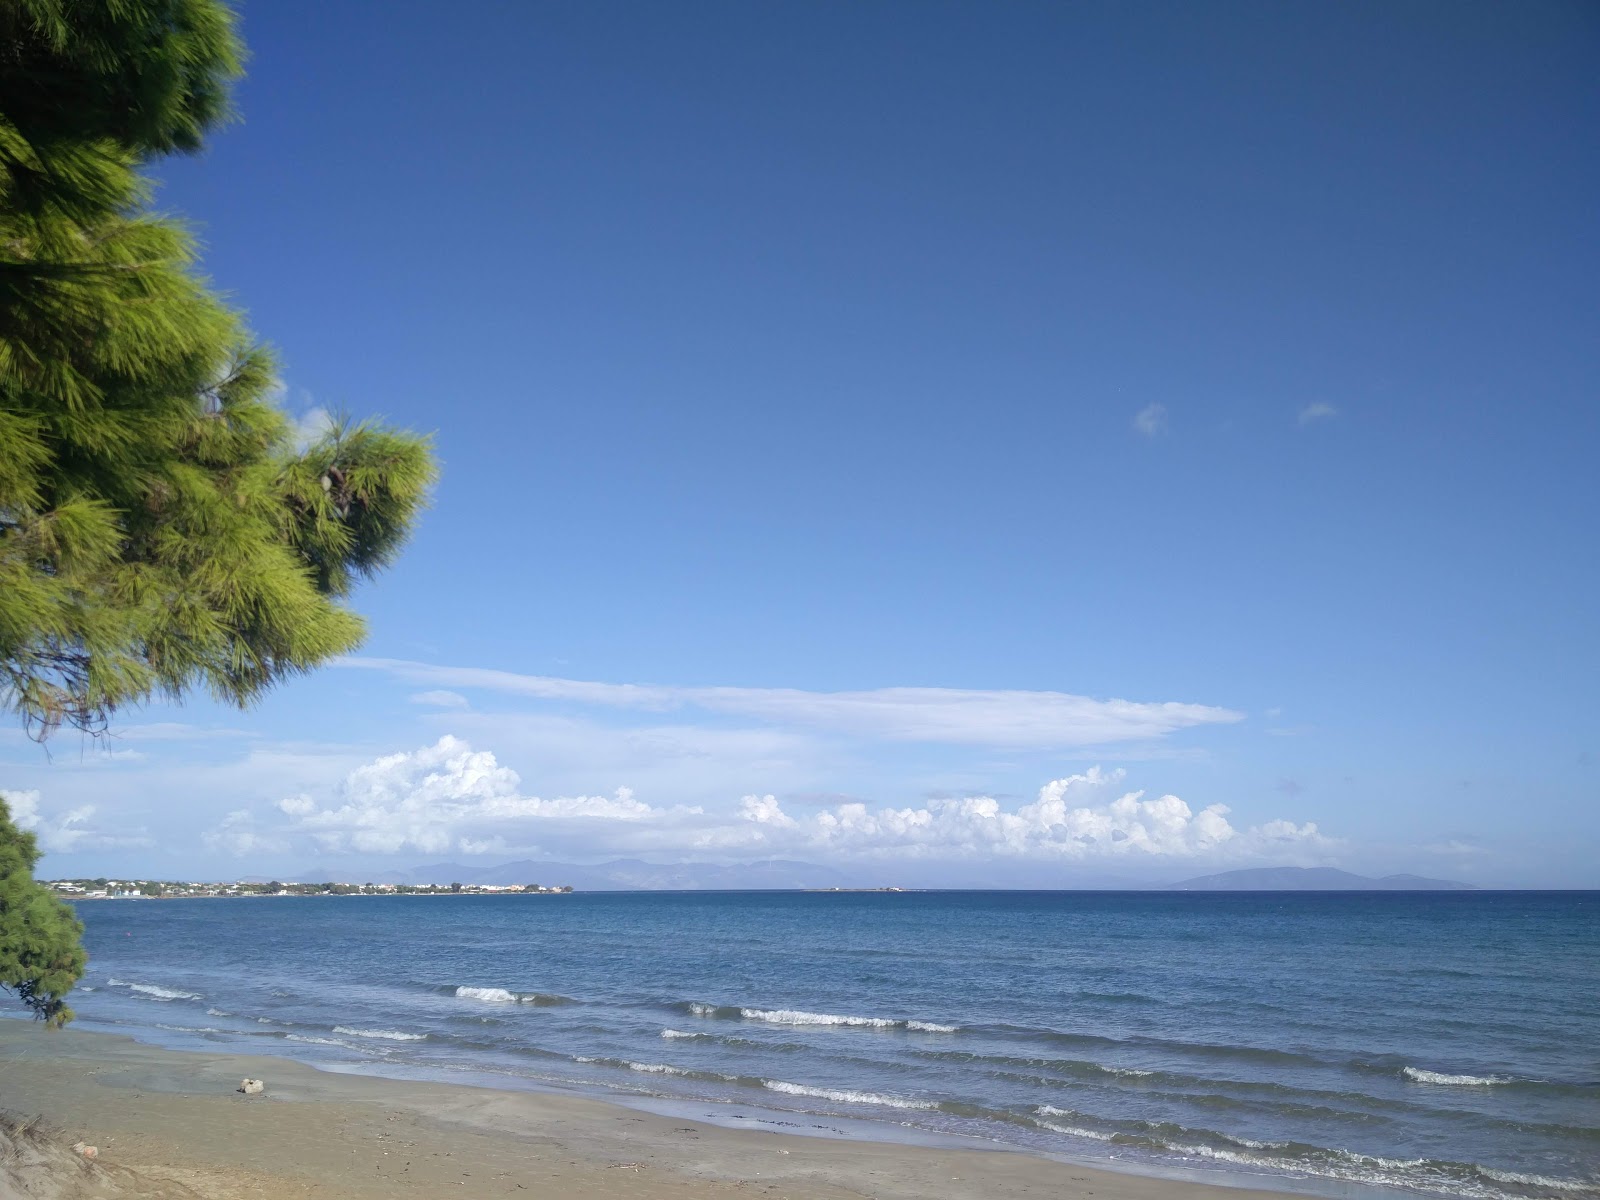 Photo de Artemis beach - endroit populaire parmi les connaisseurs de la détente